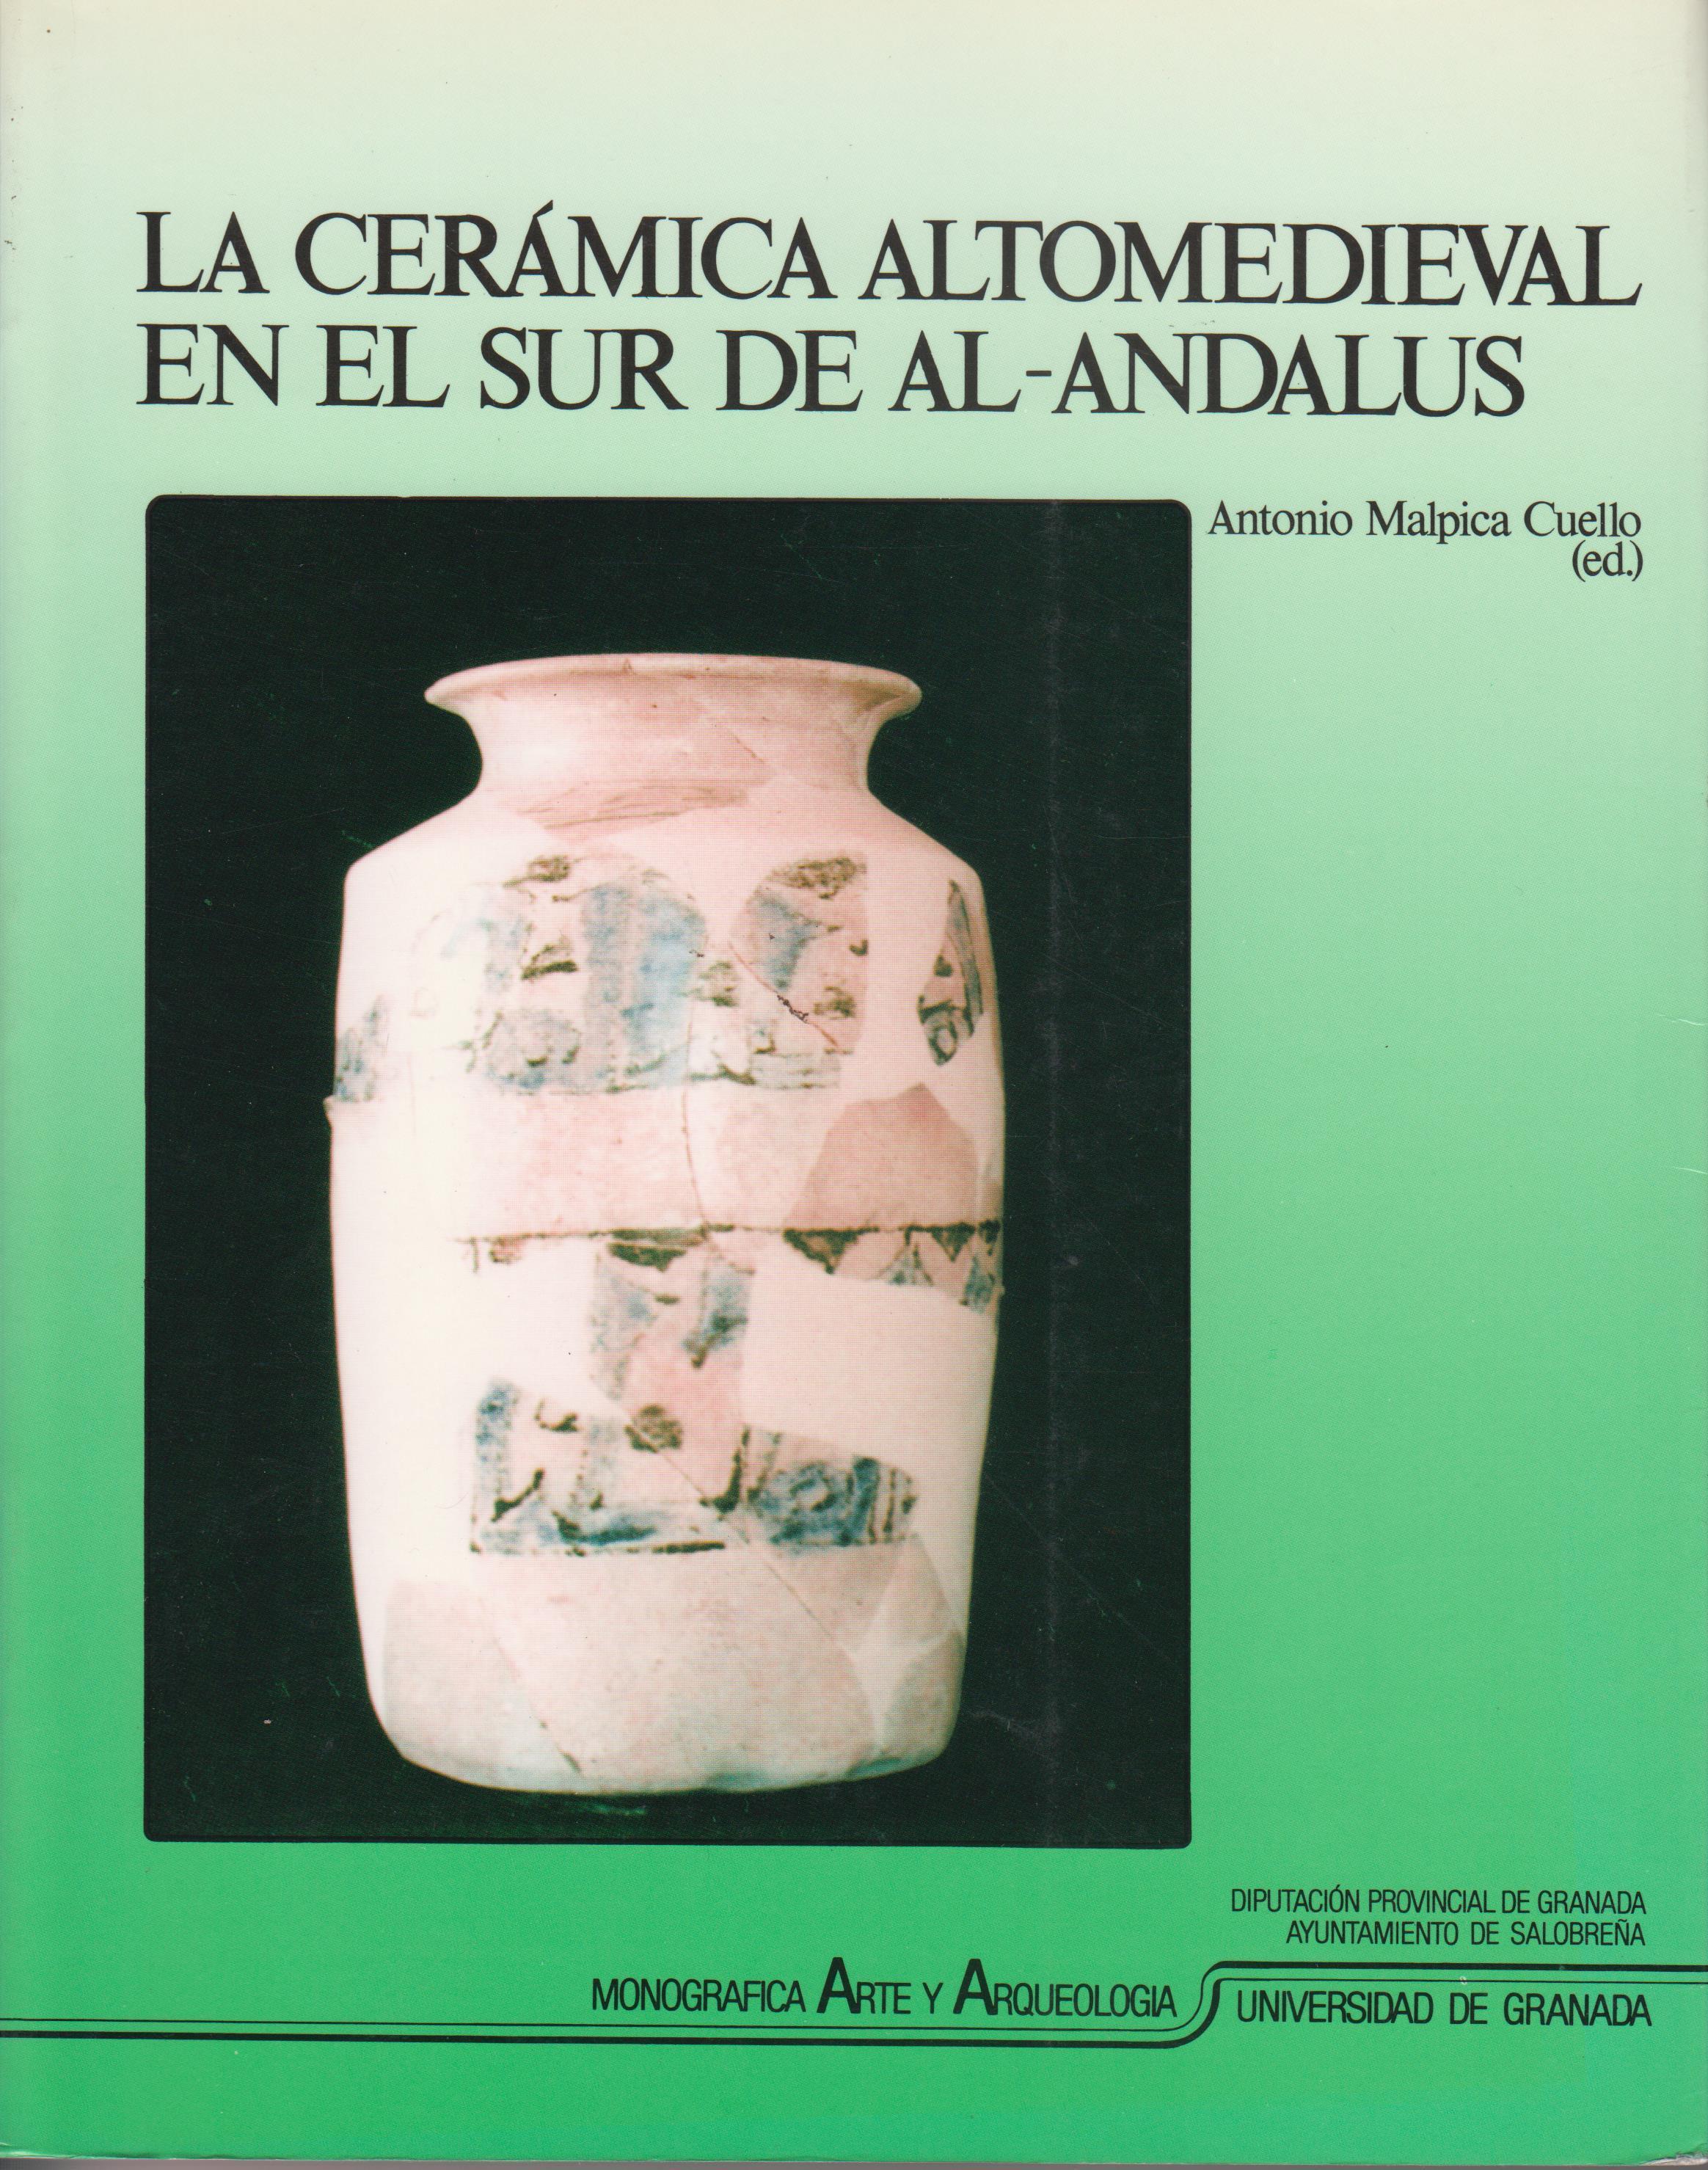 Imagen de portada del libro La cerámica altomedieval en el sur de al-Andalus